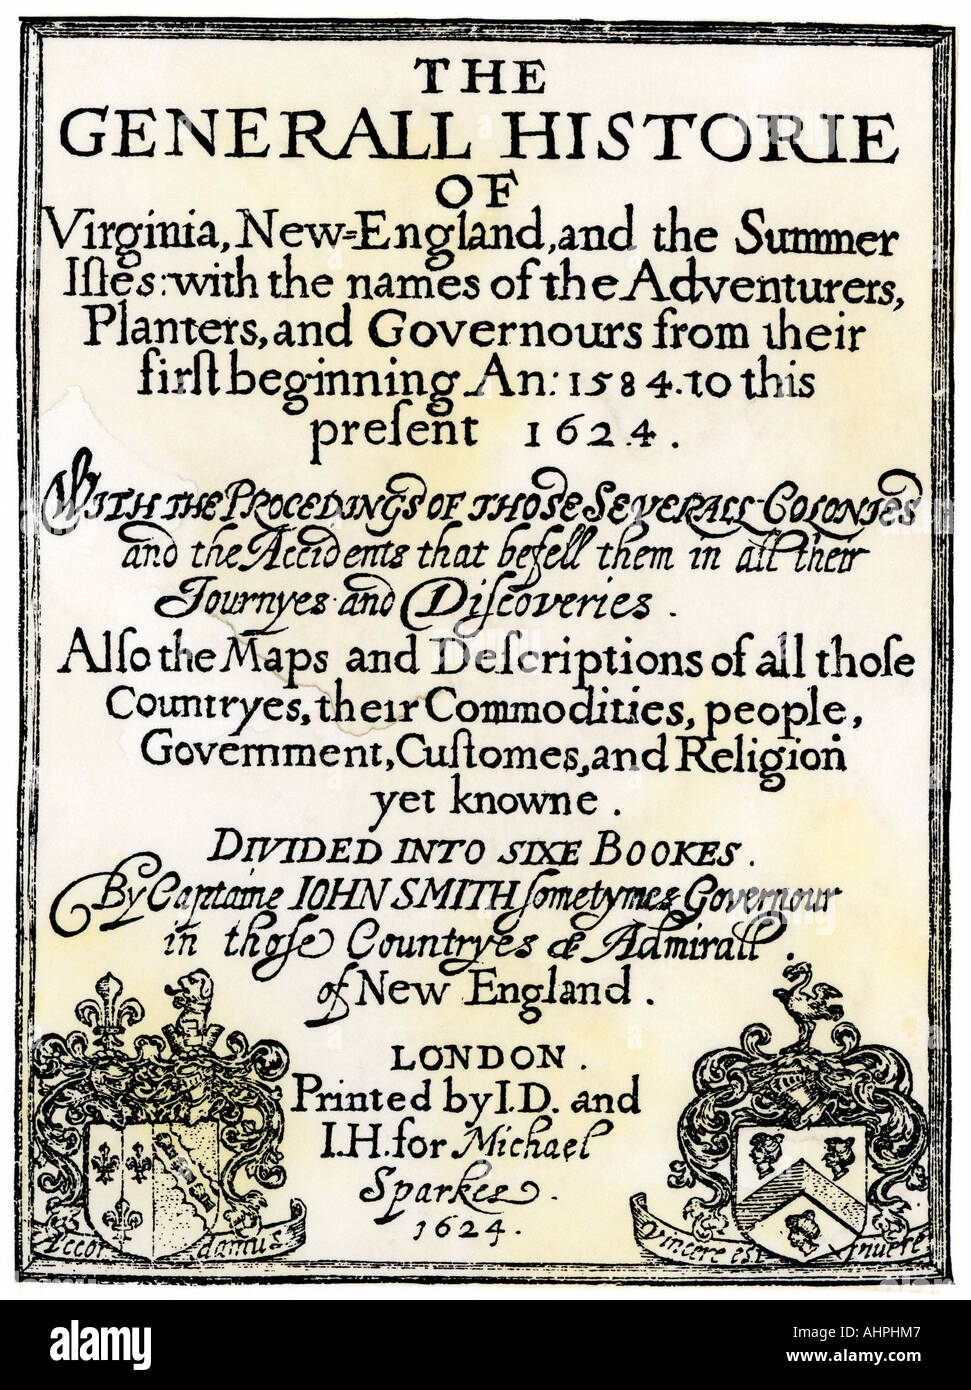 John Smith Titel Seite zu seinem General Historie of Virginia New England und die Summer Isles im Jahre 1624 gedruckt. Holzschnitt mit einem Aquarell waschen Stockfoto